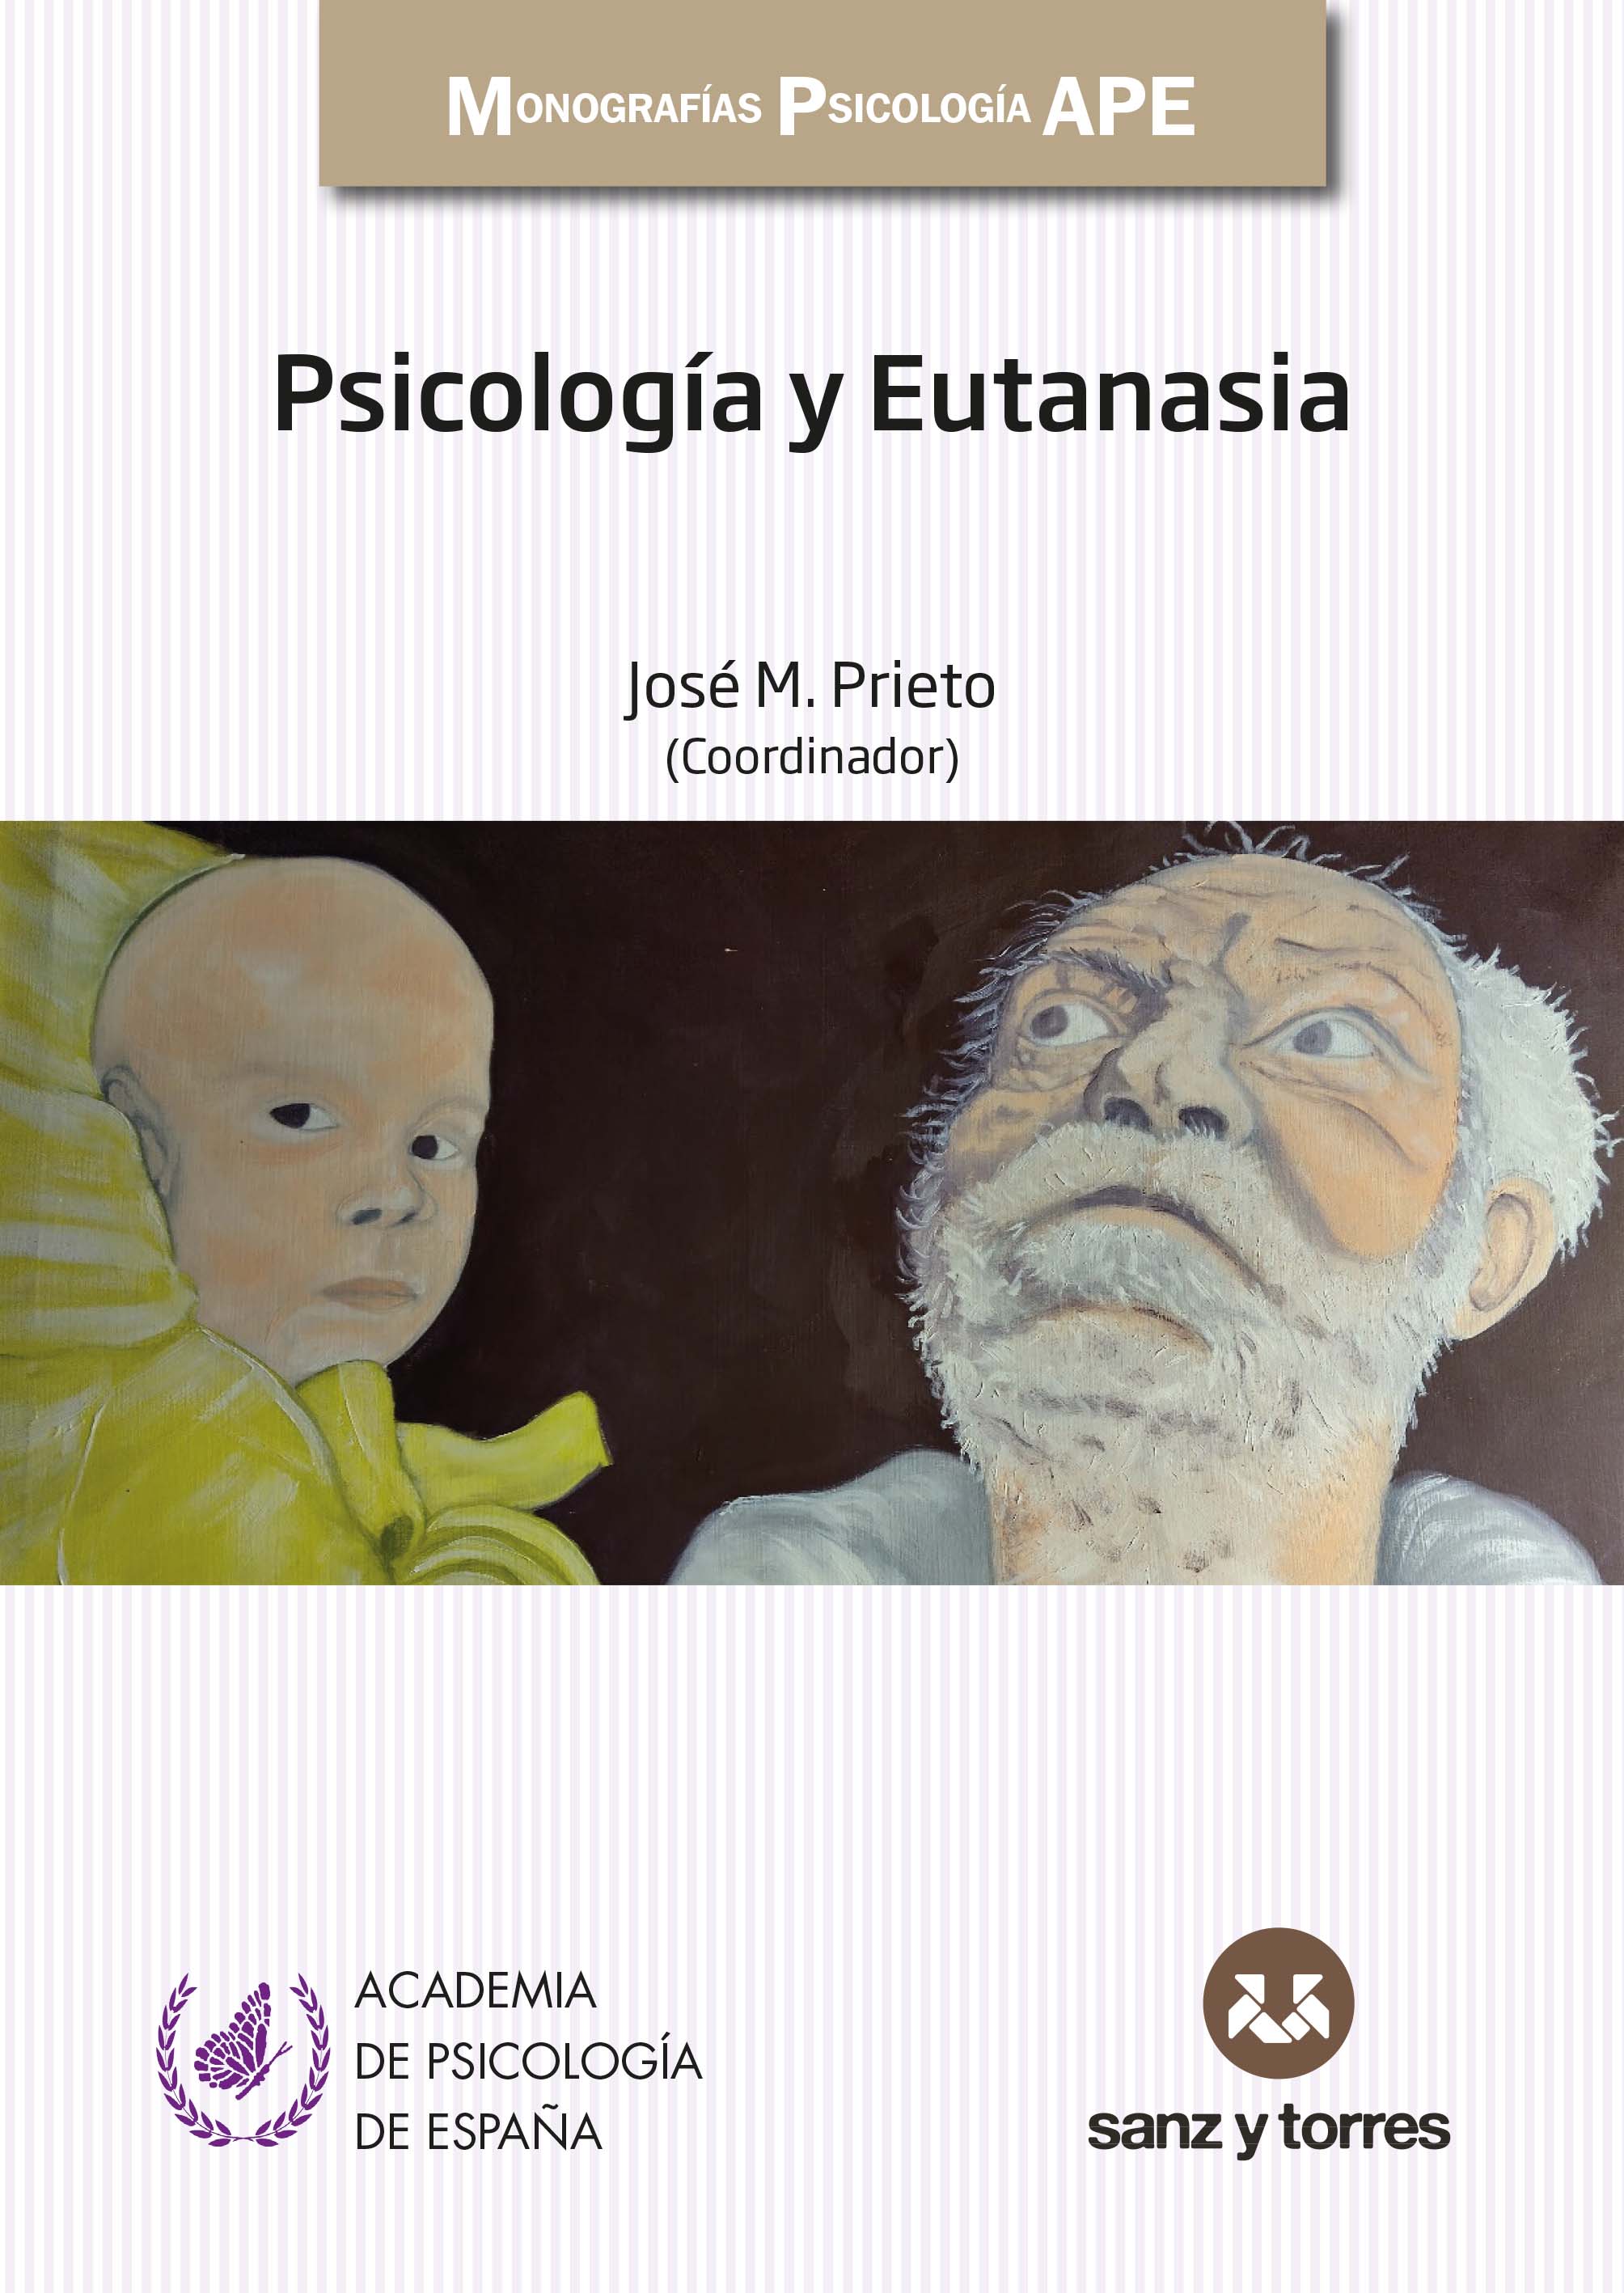 Imagen de portada del libro Psicología y eutanasia